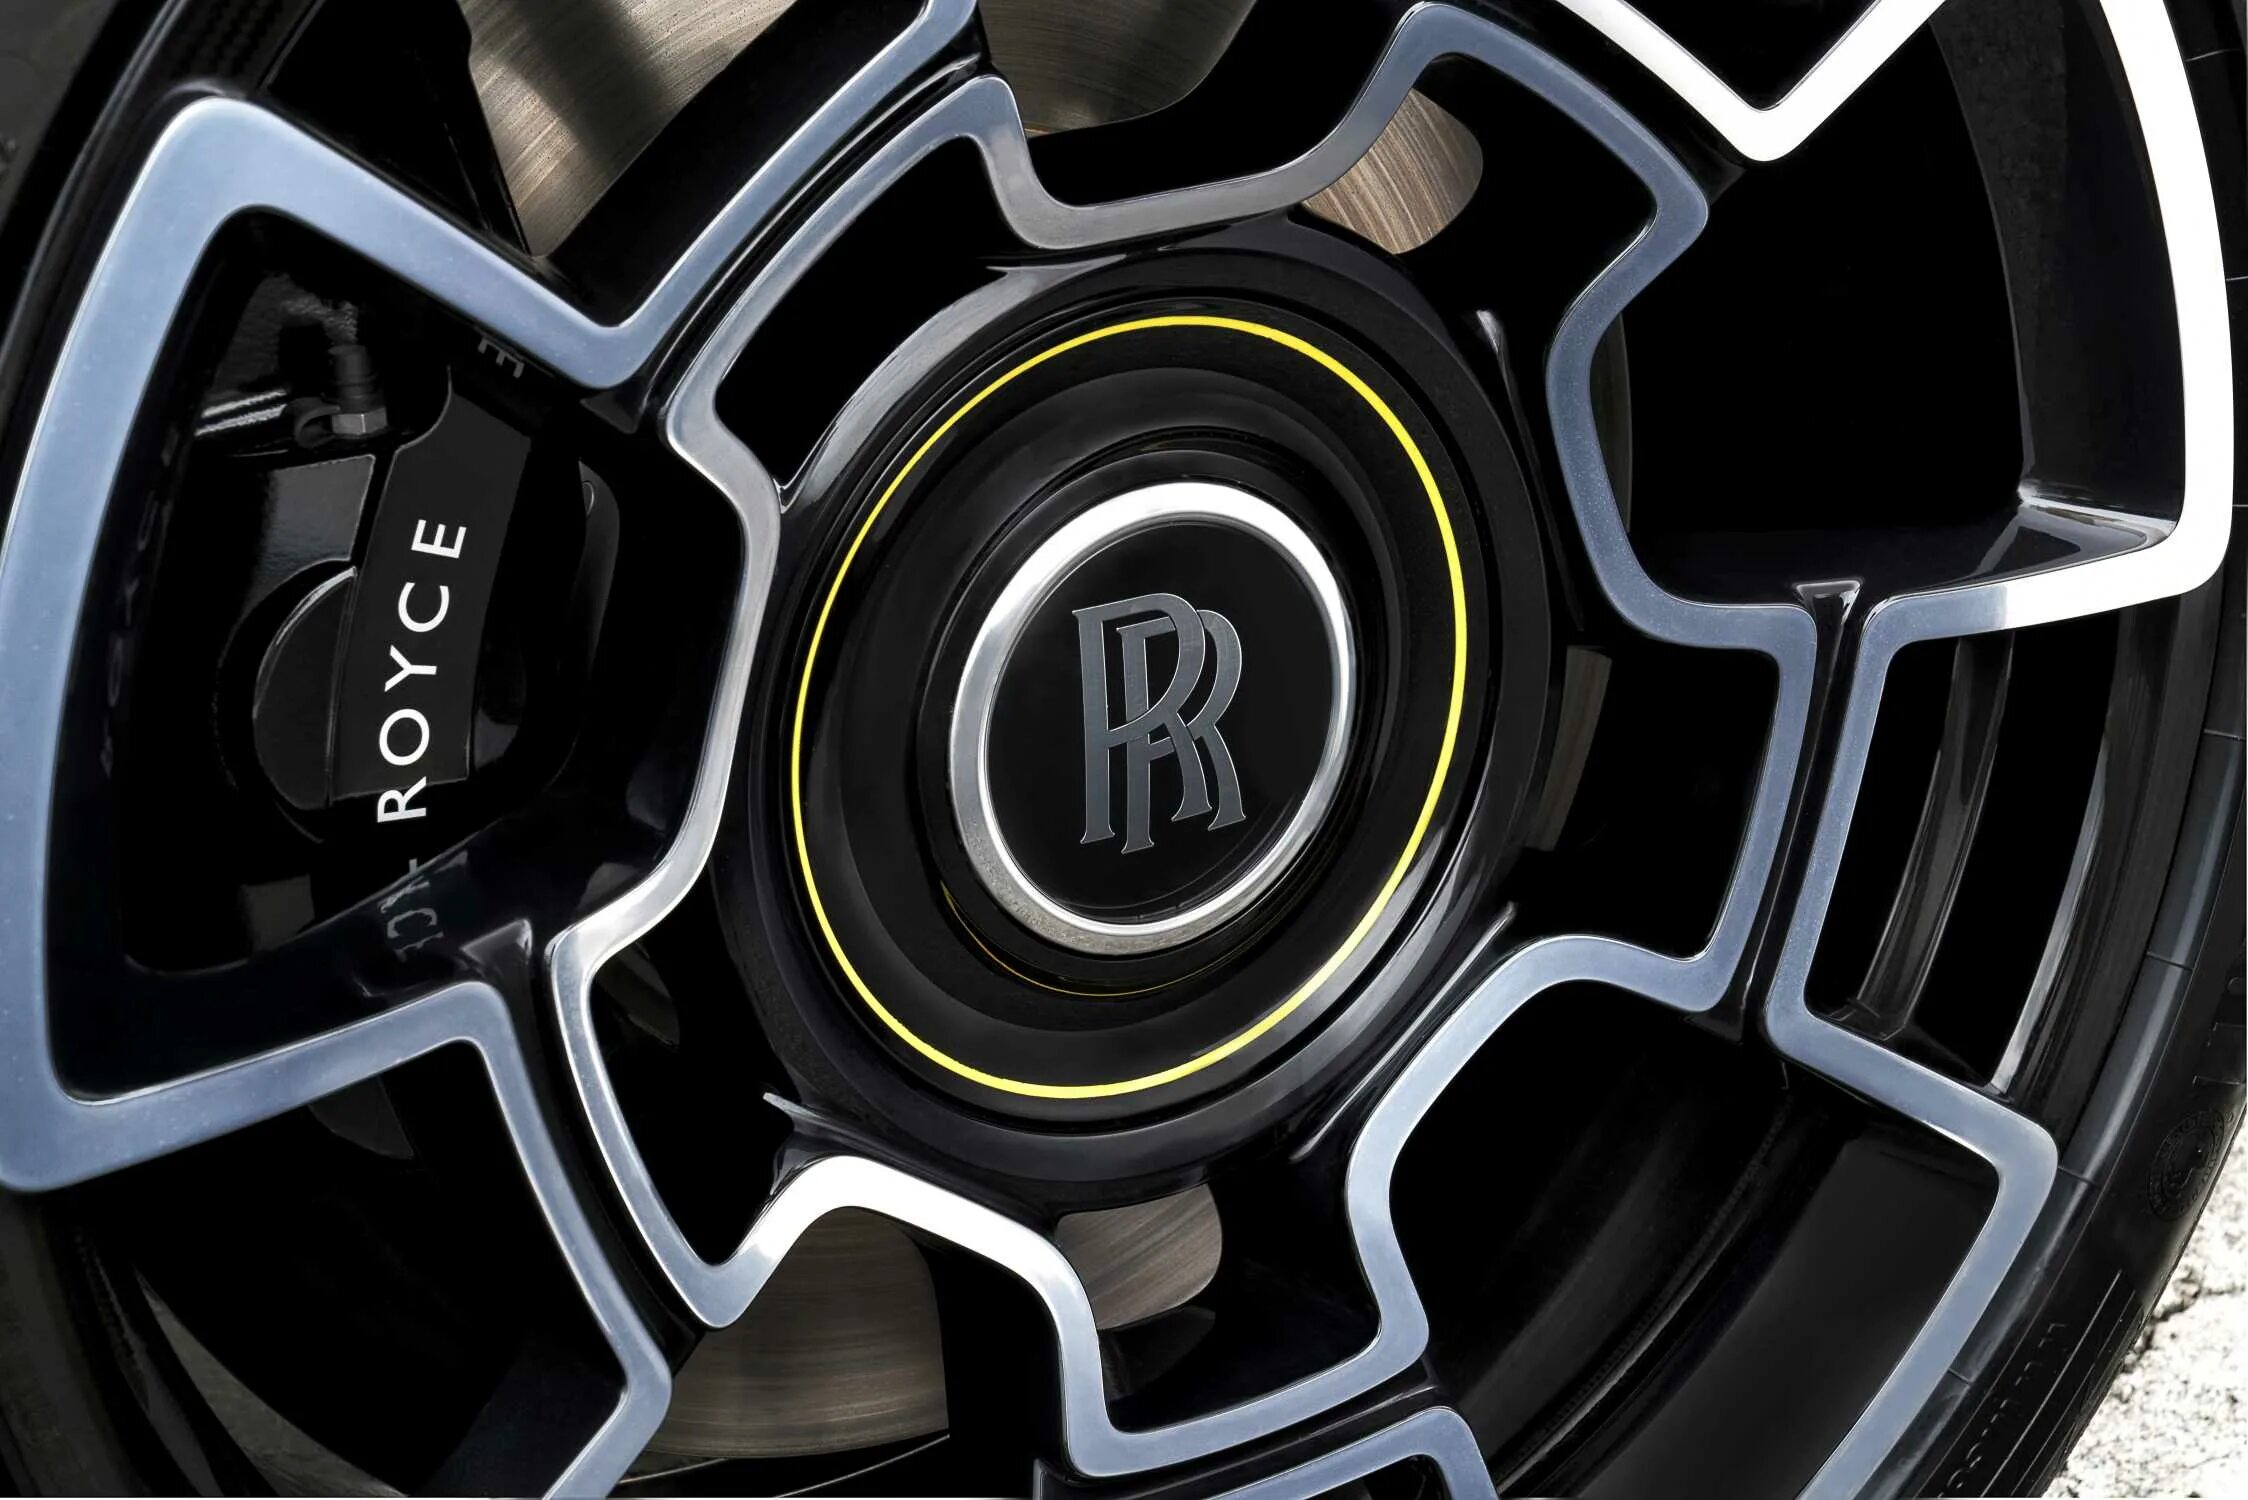 Колесо rolls. Колеса Роллс Ройс. Диски Black badge. Rolls Royce Dawn Black badge. Rolls-Royce Dawn Black badge колесные диски.